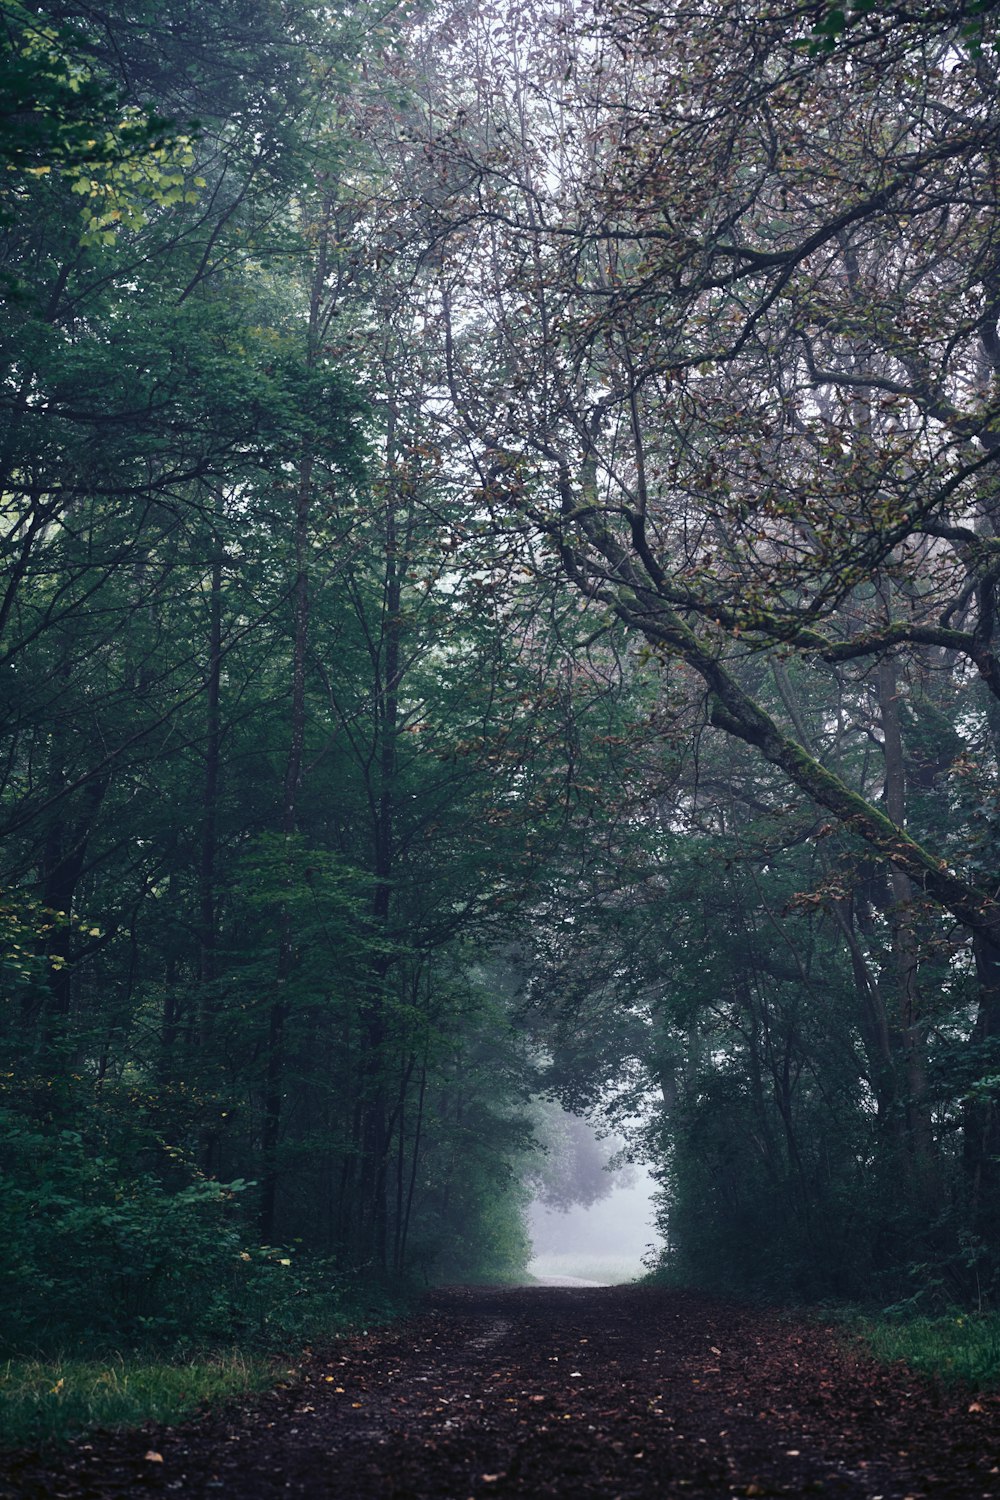 Un camino de tierra rodeado de árboles en un día de niebla